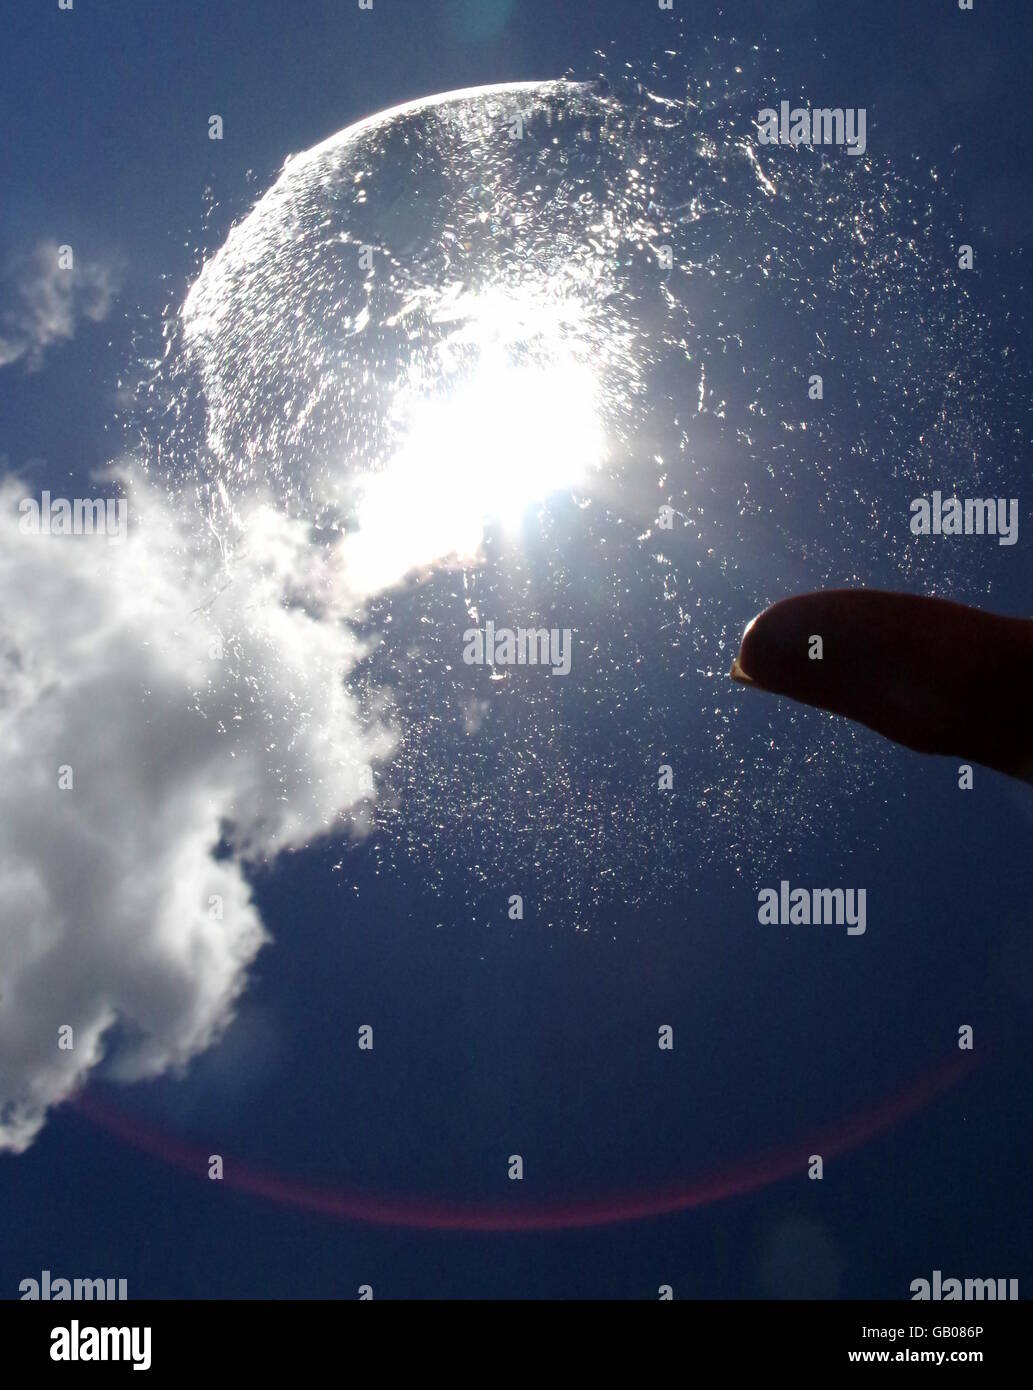 Bubble bursting on fingertip Stock Photo